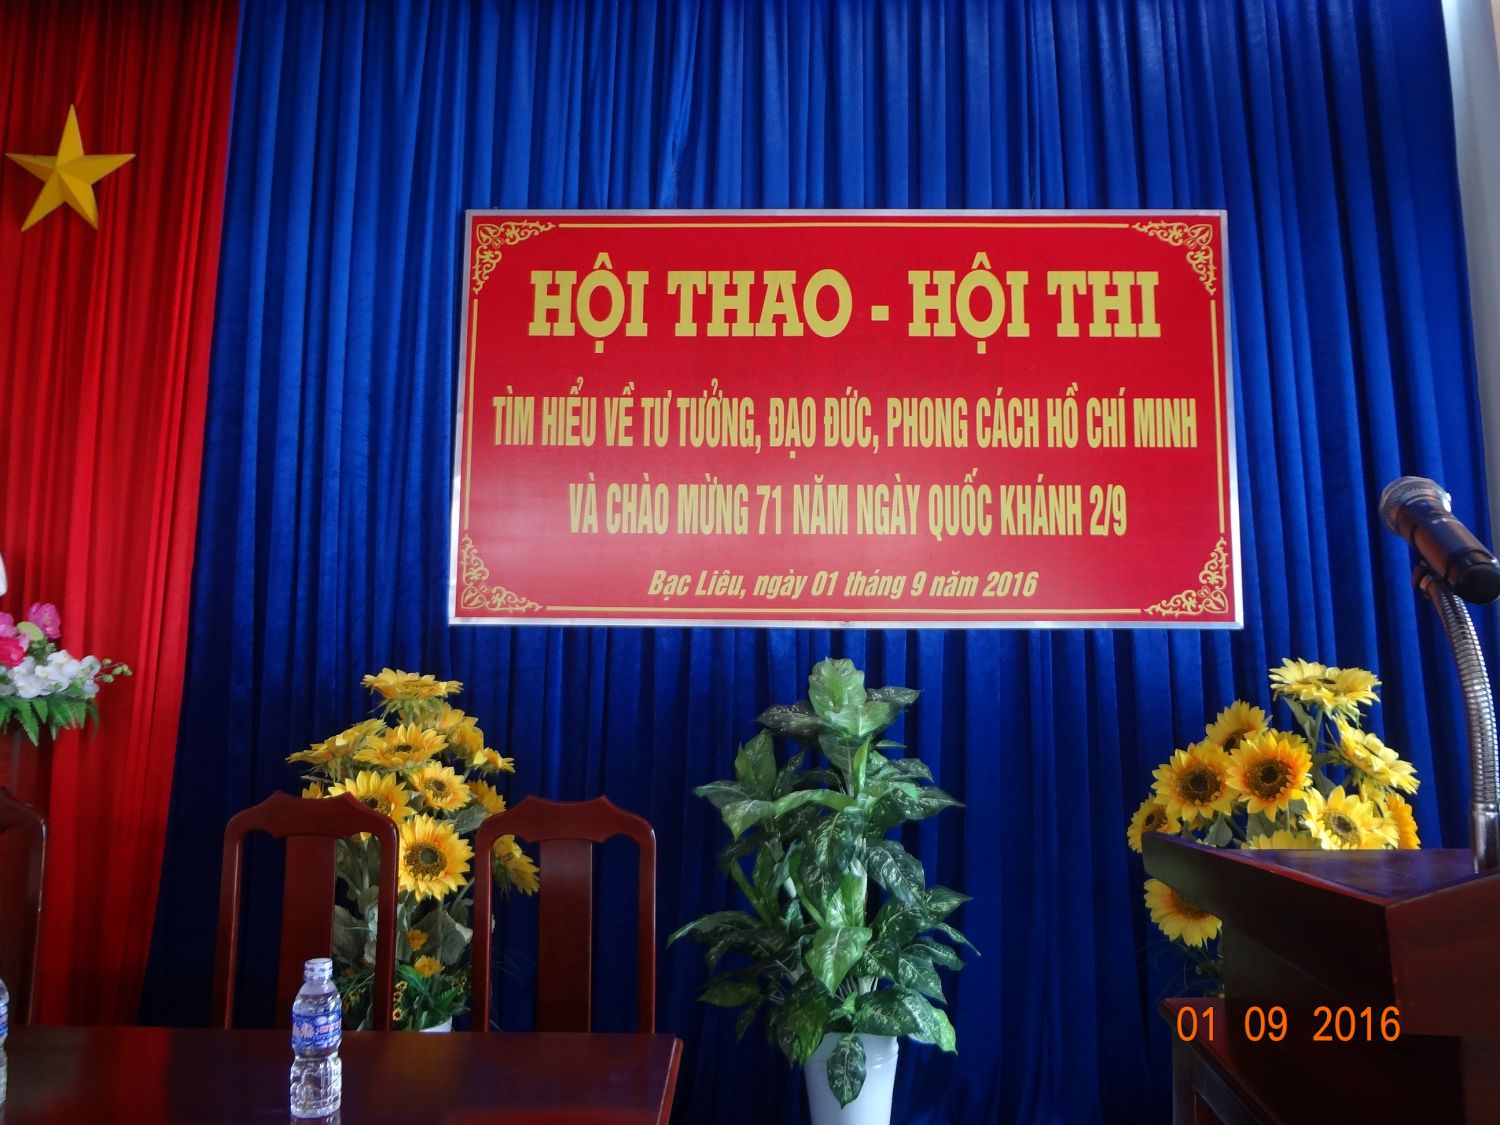 Hoạt động mừng lễ 2/9 kết hợp phong trào học tập và làm theo tấm gương đạo đức, phong cách Hồ Chí Minh